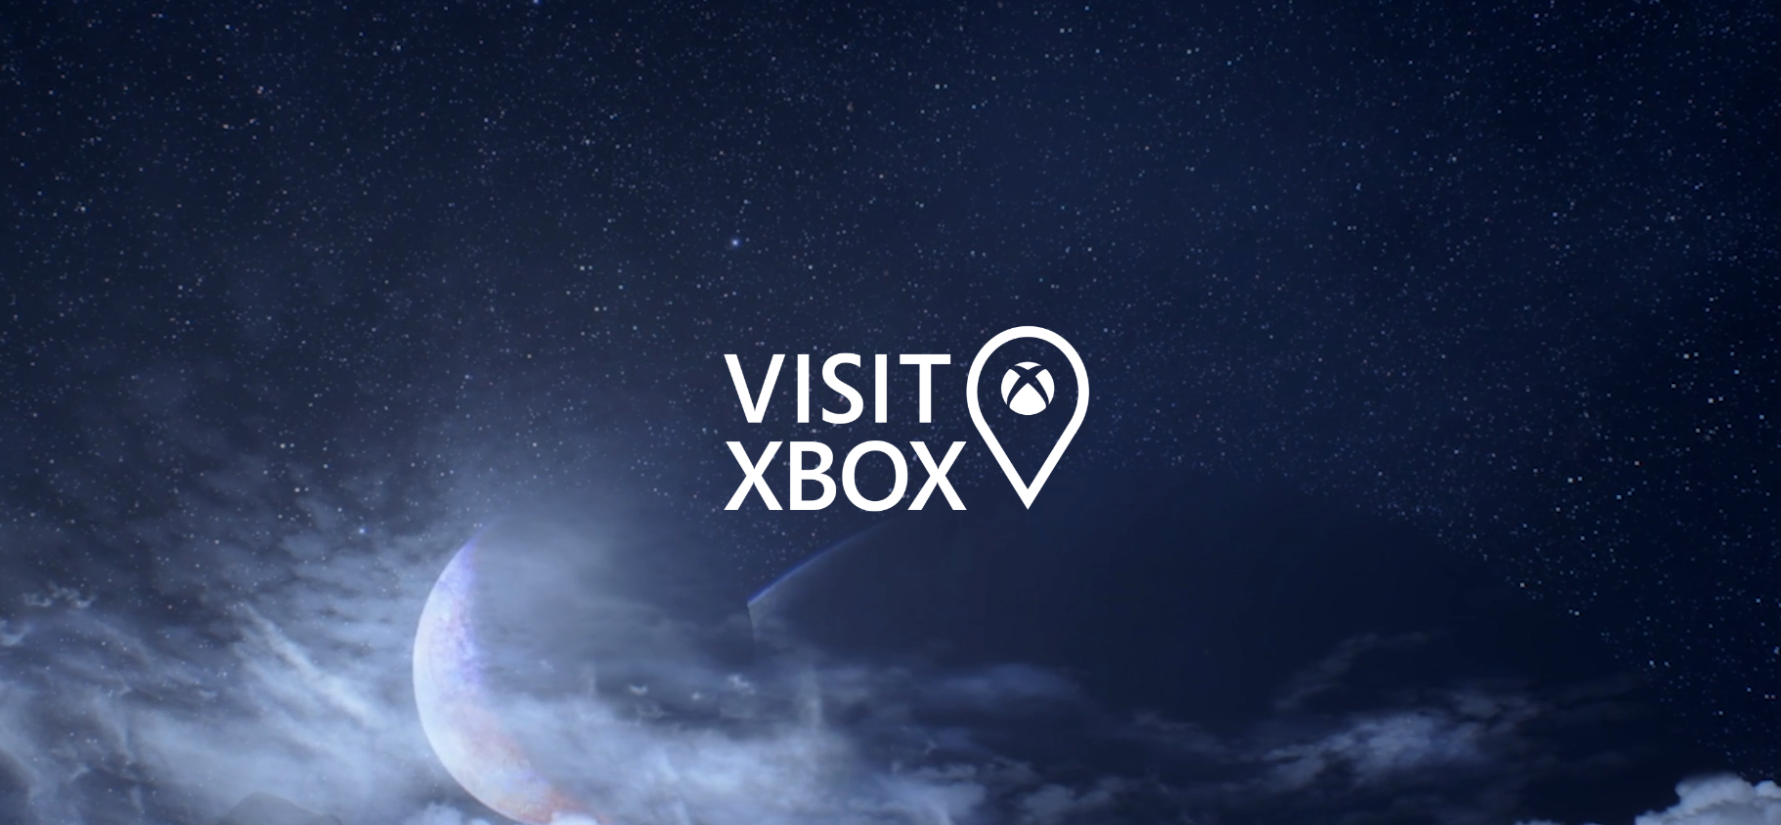 マイクロソフト 海外で Visit Xbox キャンペーンを開始 Wpteq